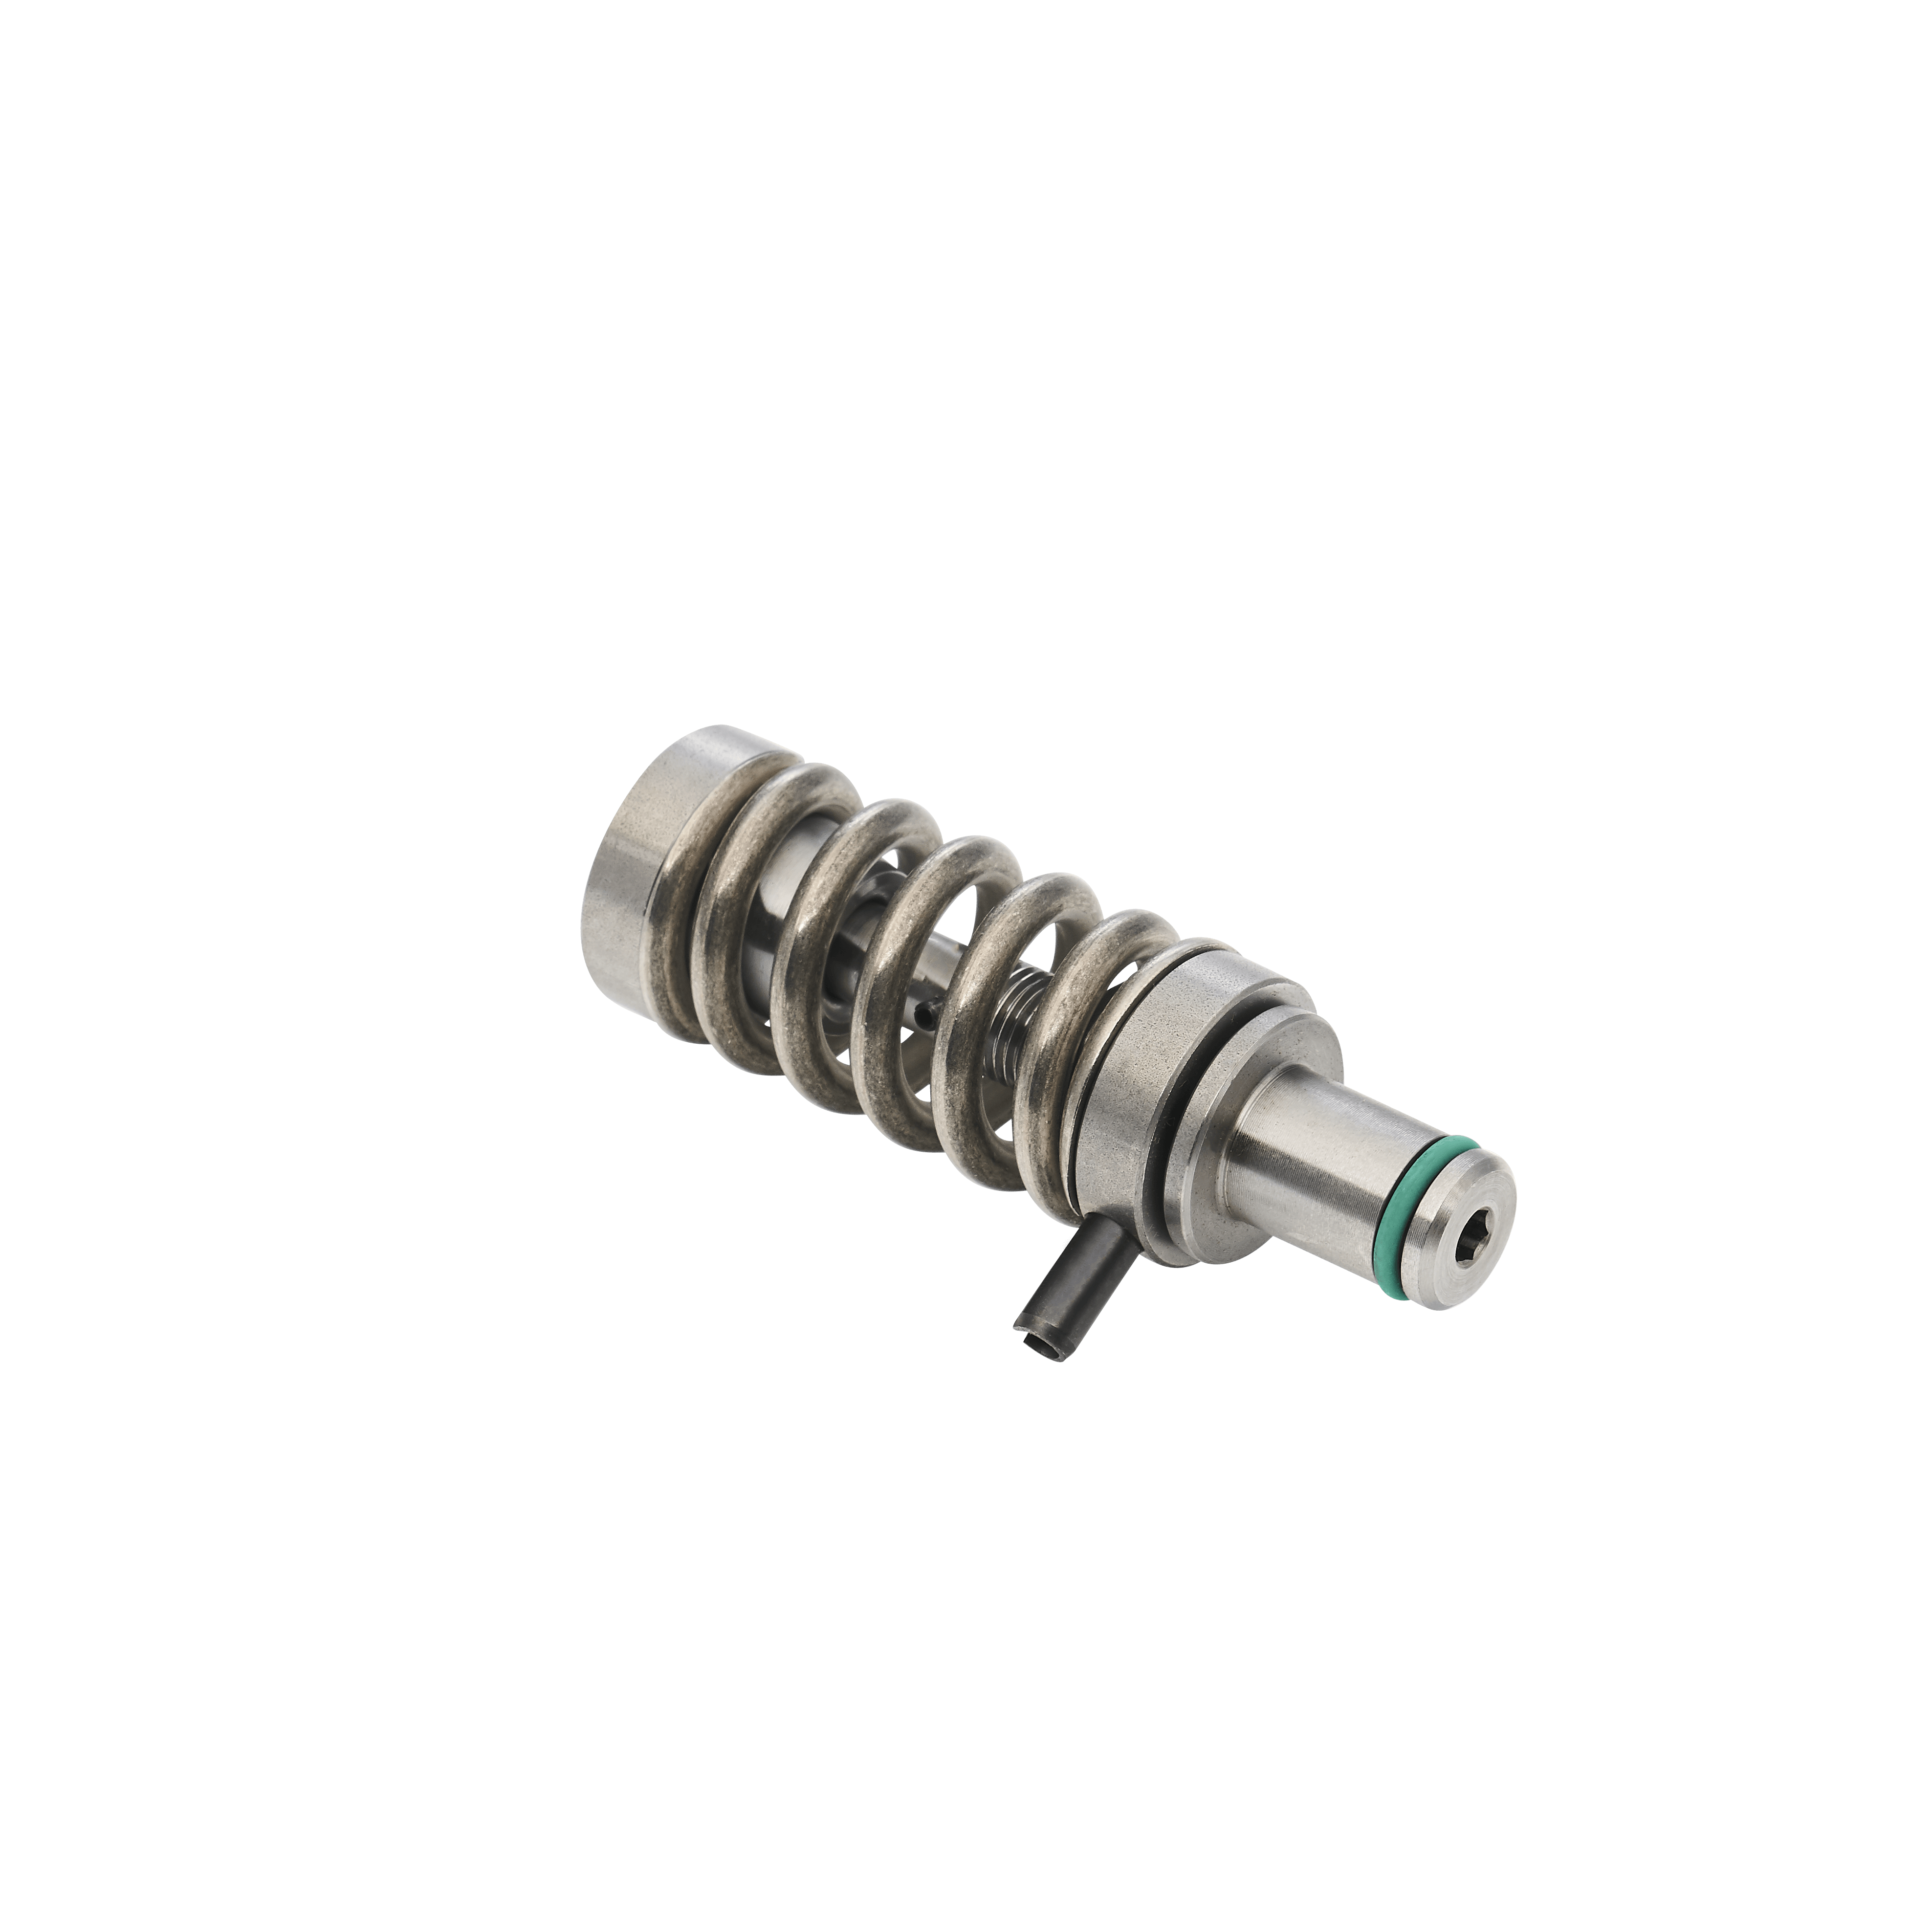 Pumps - Spare part kit valve element